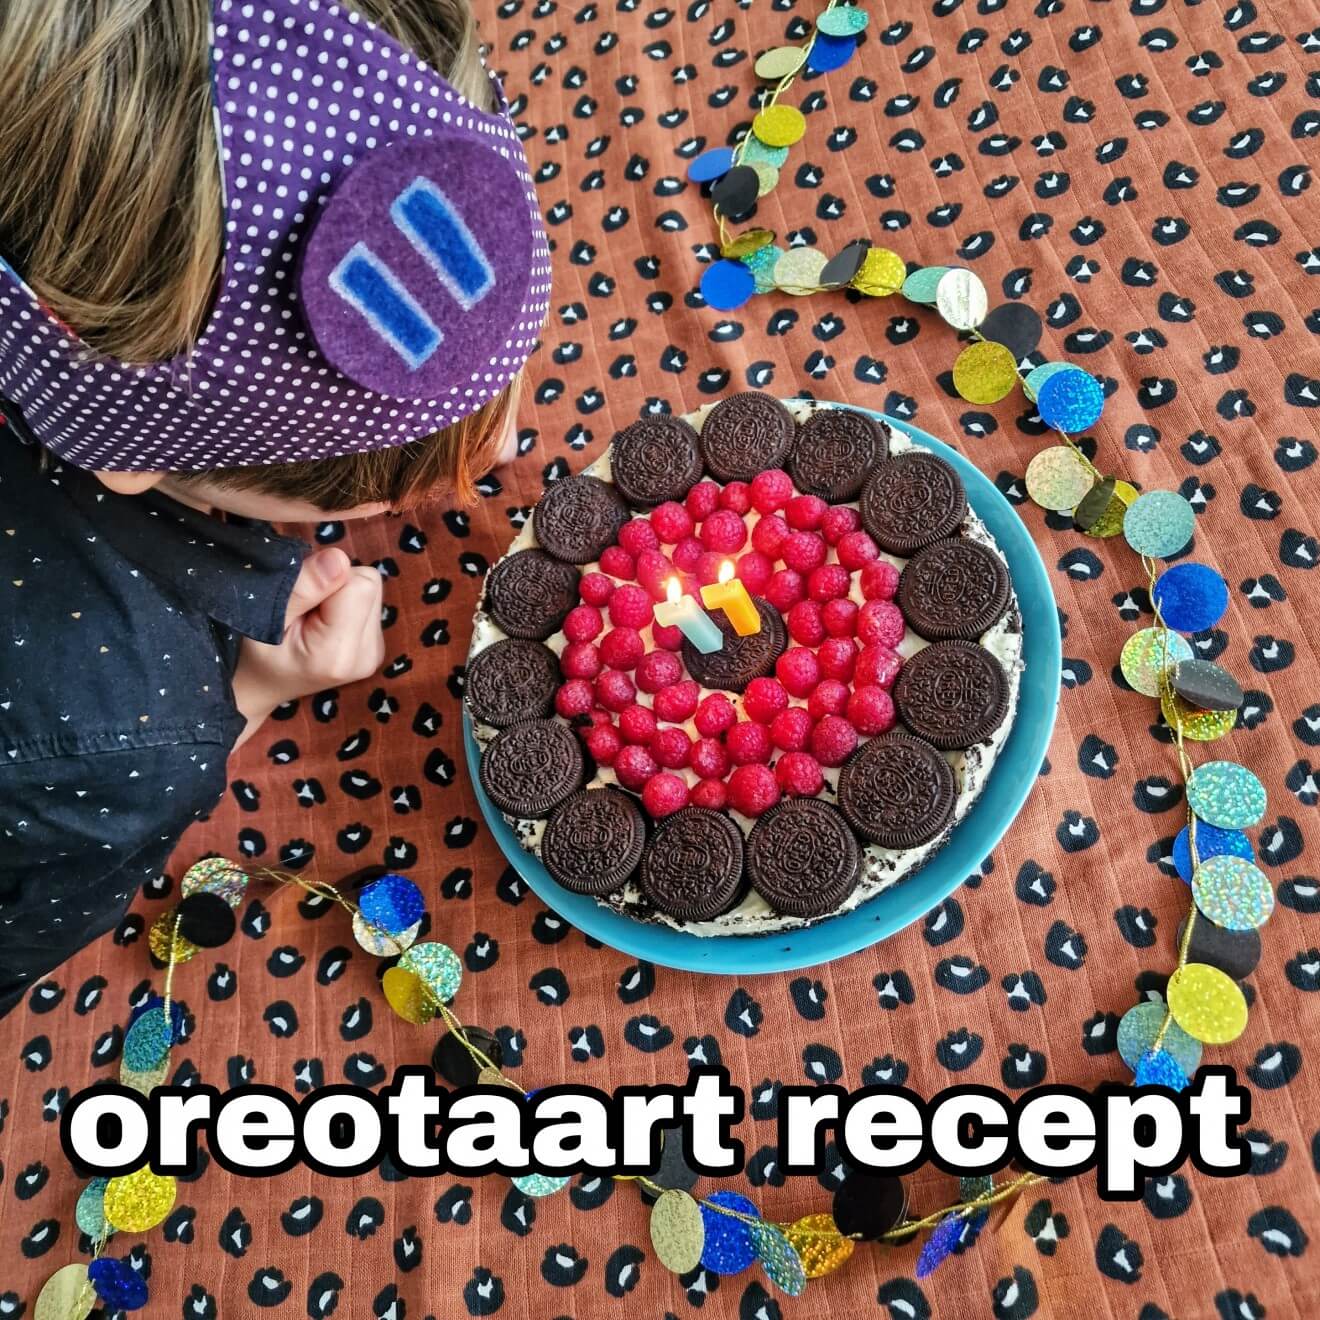 Oreotaart cheesecake recept: makkelijke verjaardagstaart maken. Zijn jullie ook zo gek op Oreo koekjes? We bedachten een super makkelijk Oreotaart recept, op basis van cheesecake.